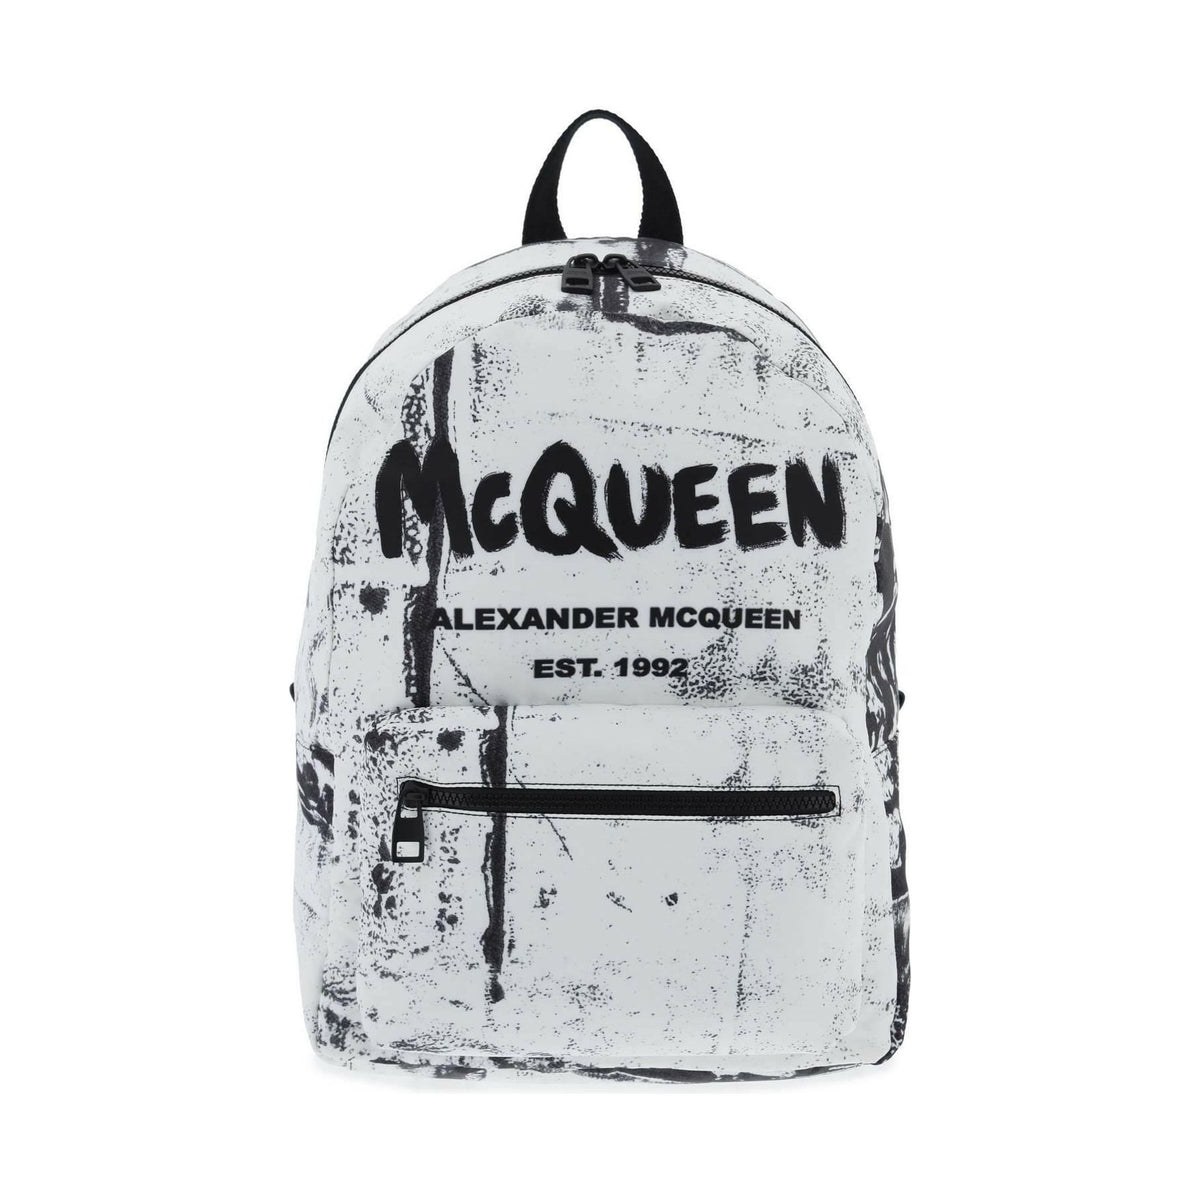 ALEXANDER MCQUEEN - Metropolitan Backpack - JOHN JULIA